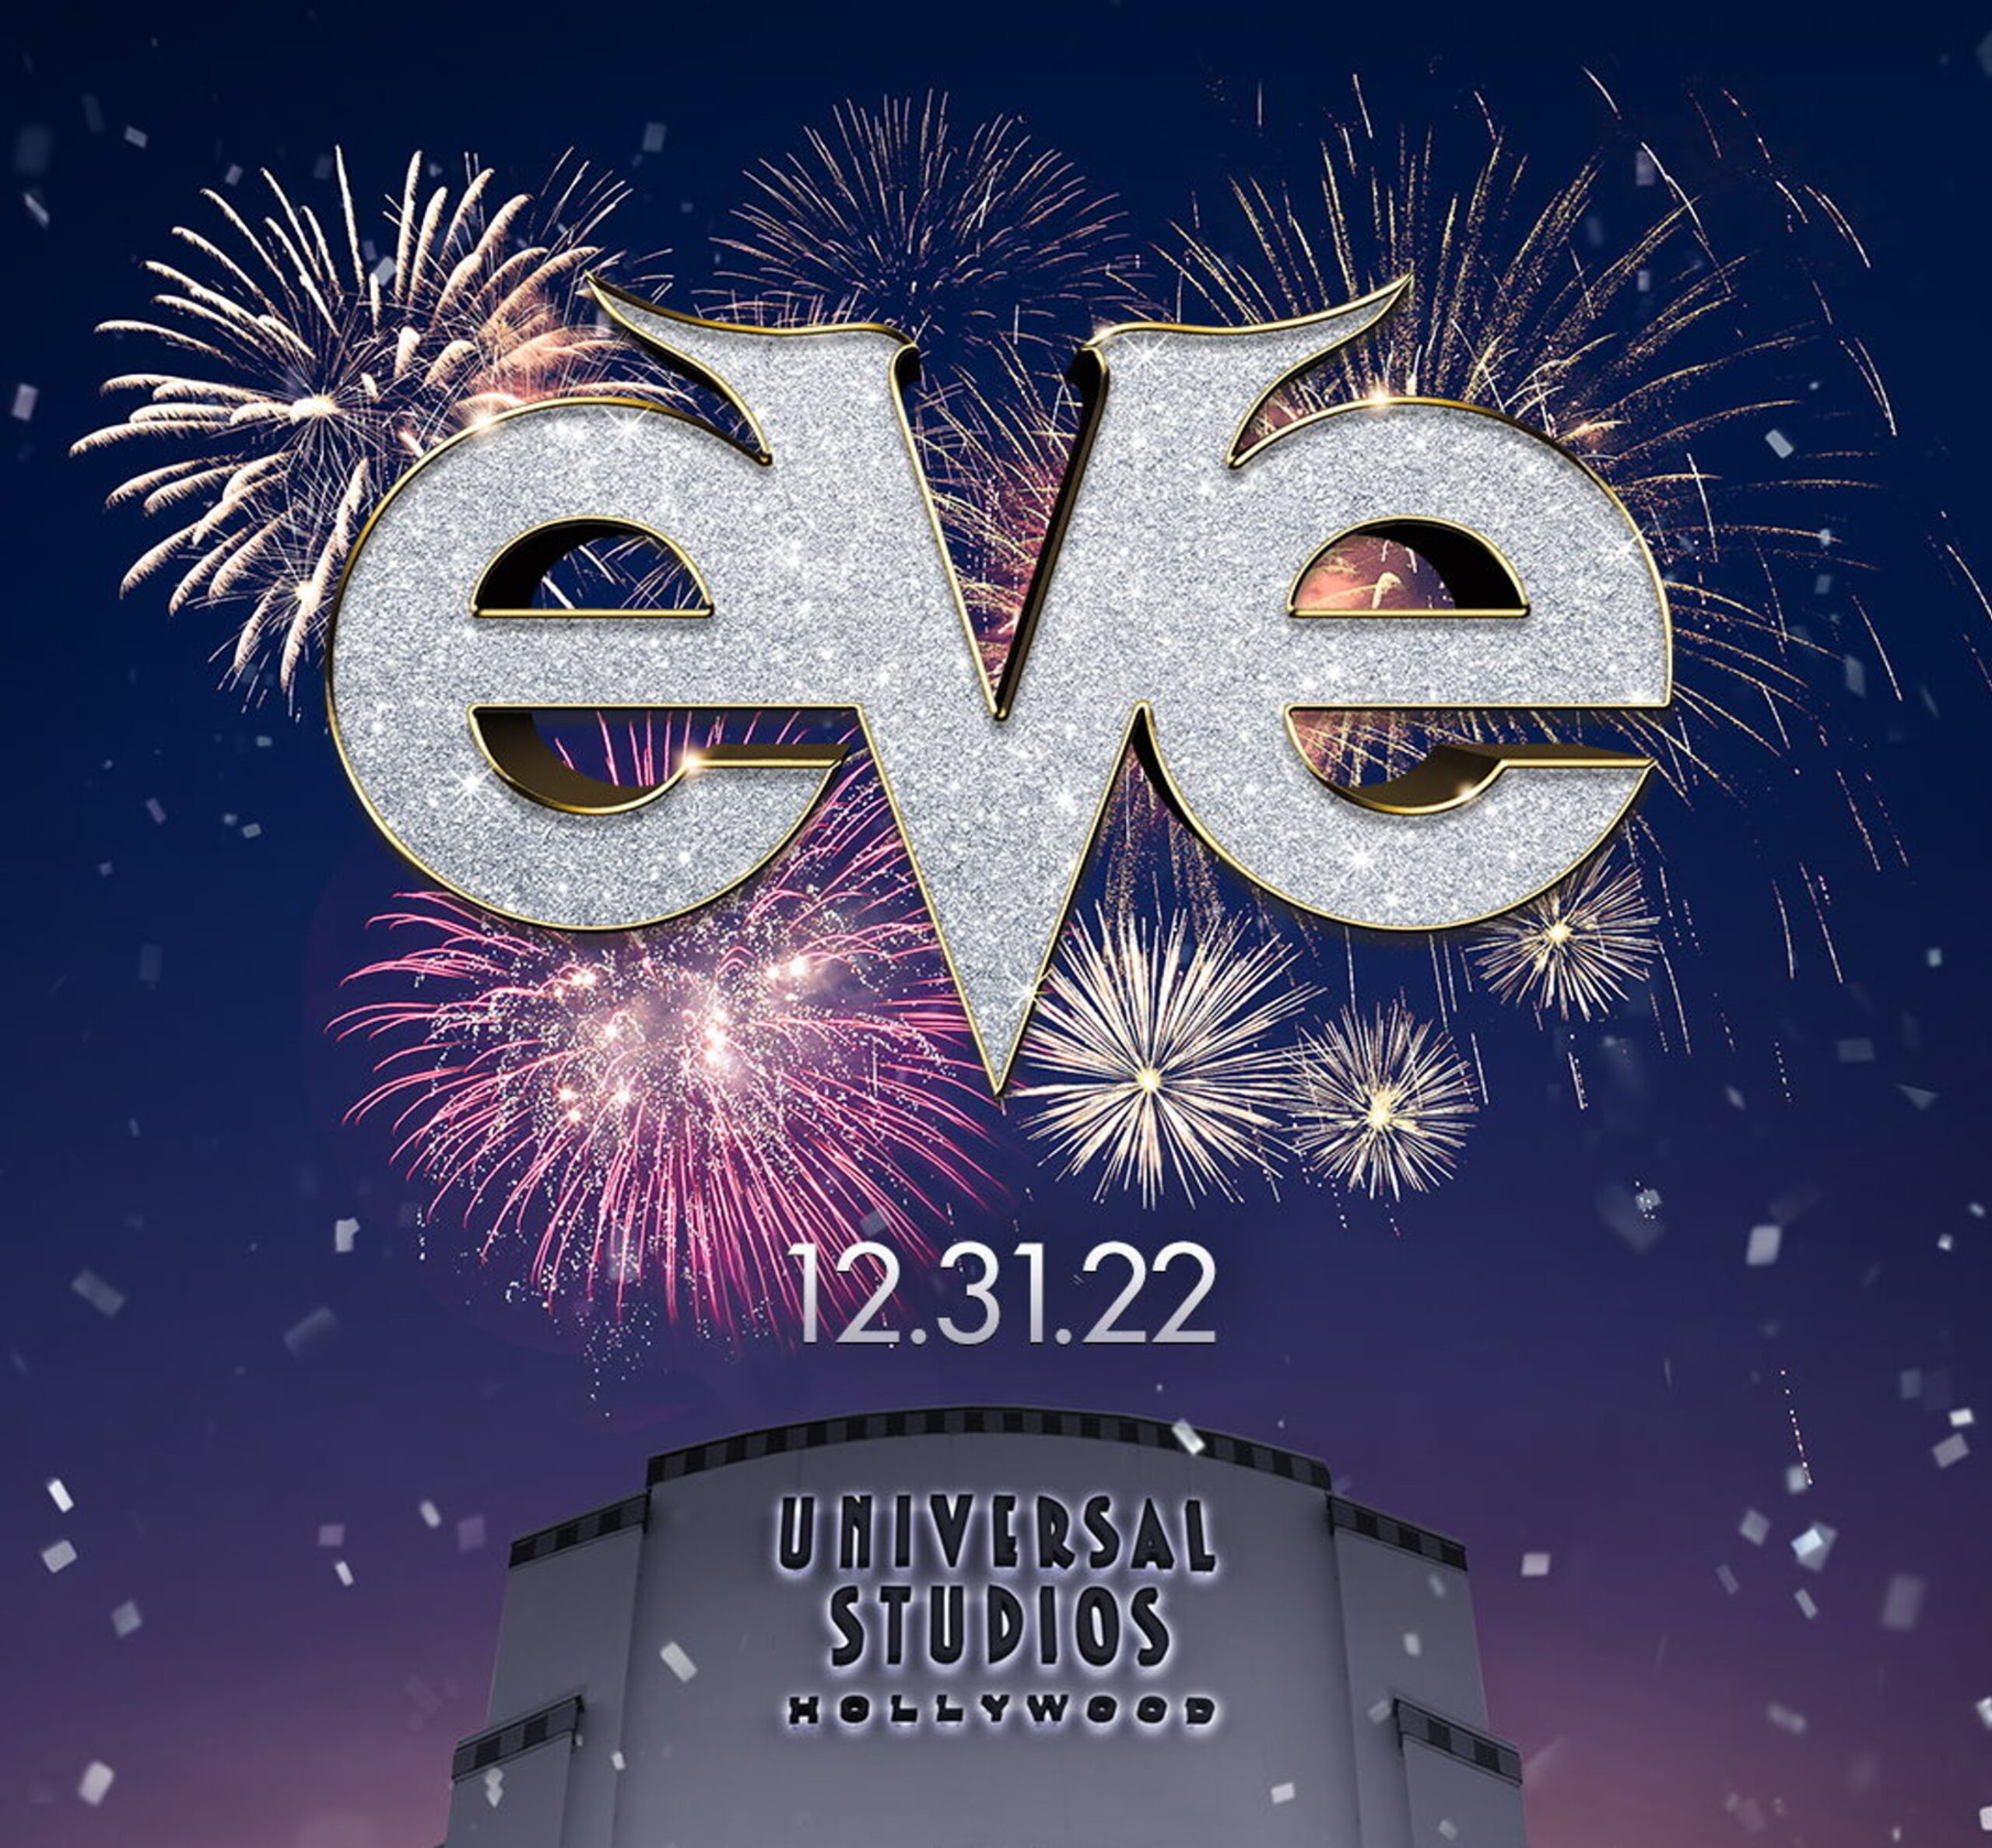 好萊塢環球影城的跨年夜: EVE 活動